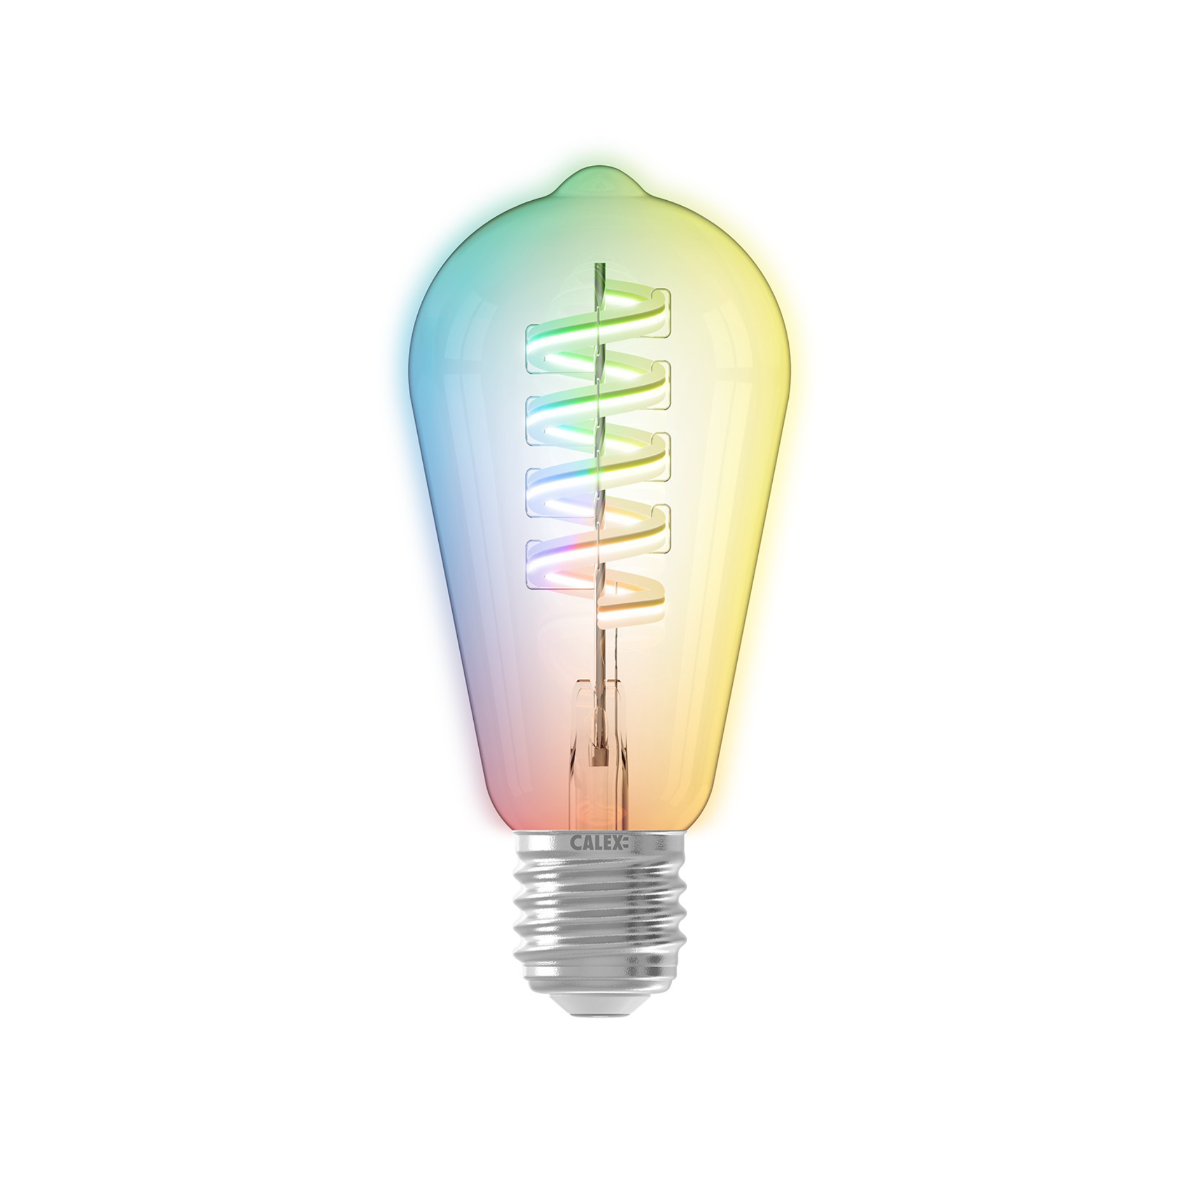 Calex Smart LED lamp - Ø 6,4 x 14,2 cm - E27 - 4,9W - dimfunctie en lichtkleur via app 1800 tot 3000K - RGB + W Lichtkoning